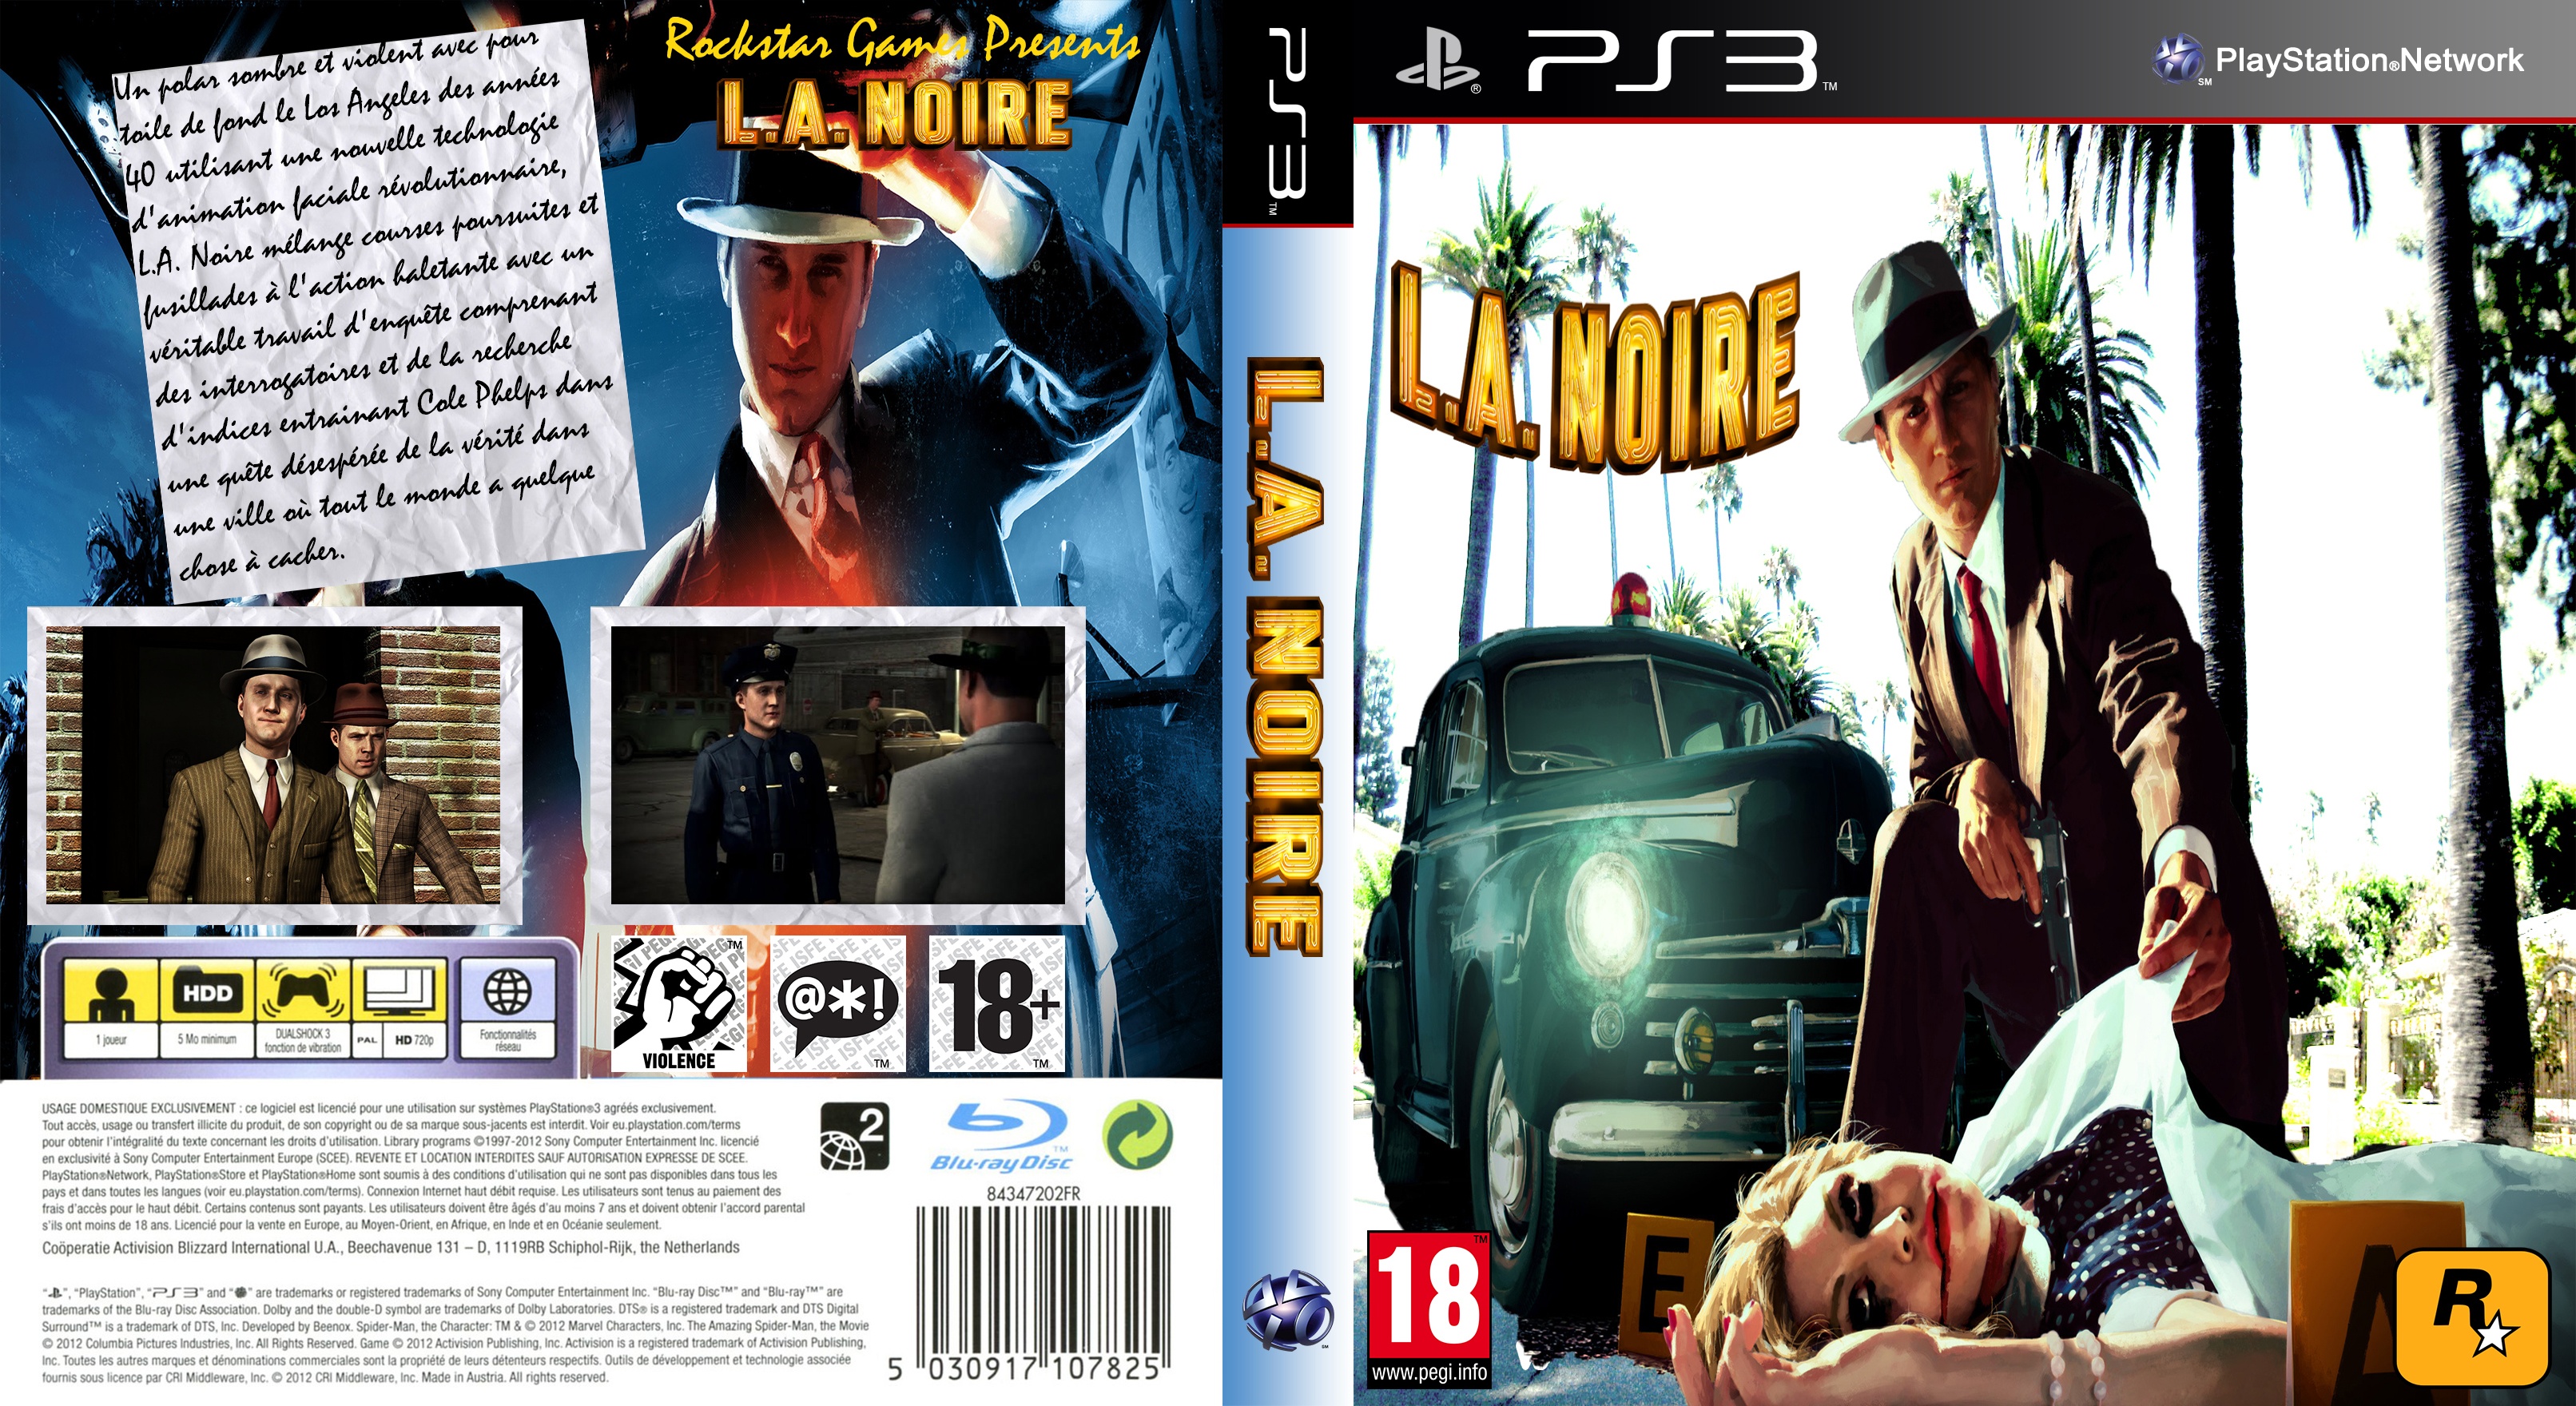 L.A Noire box cover